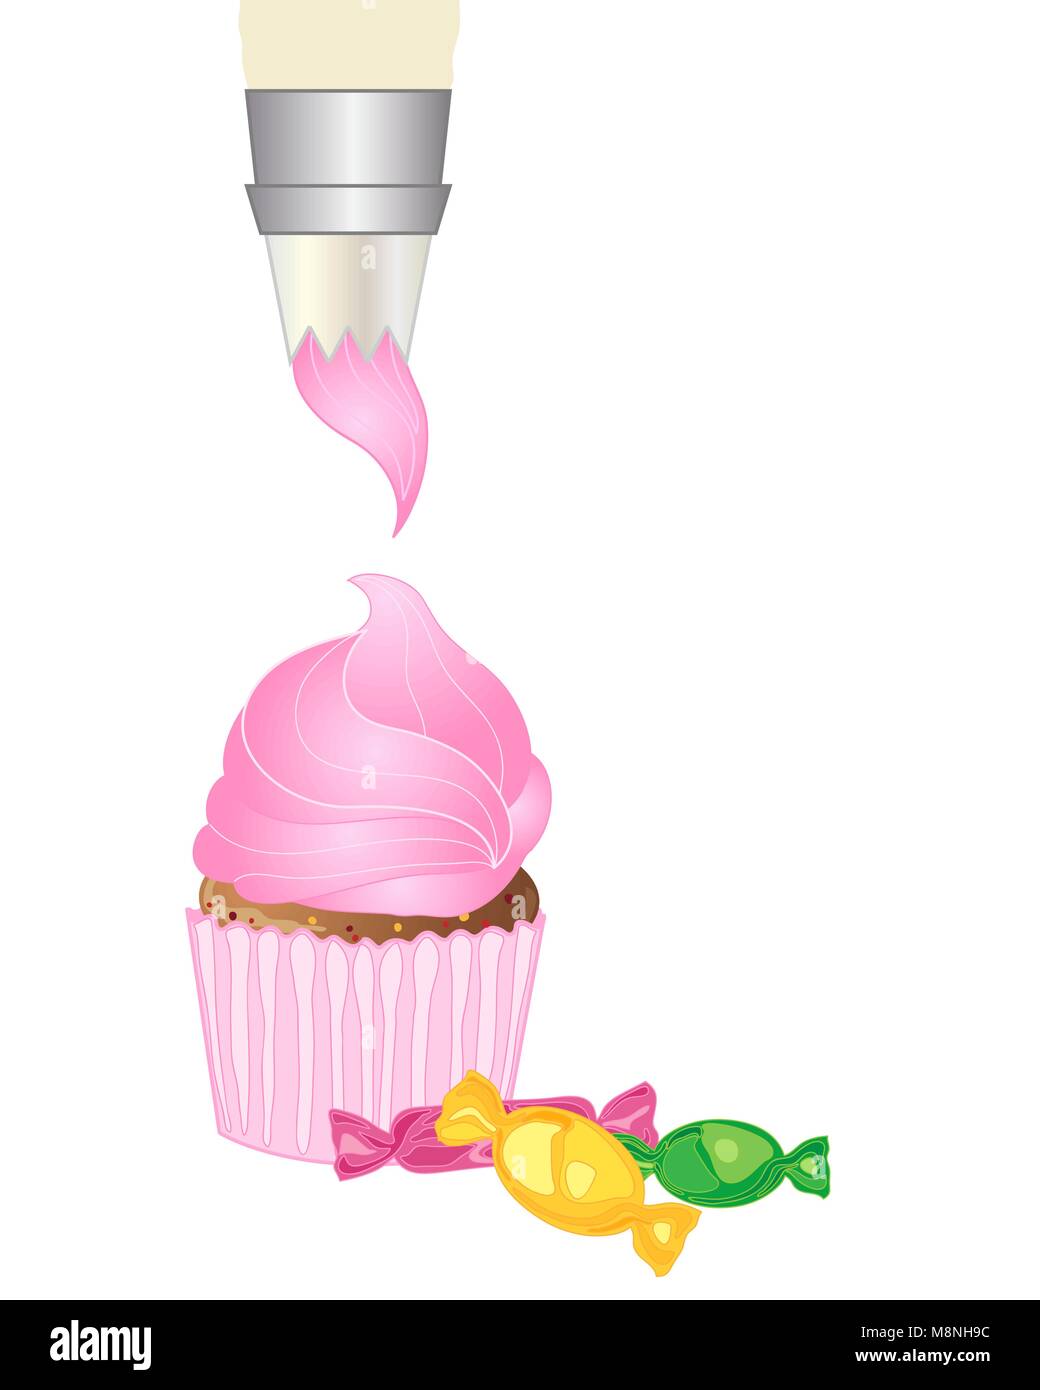 Un vecteur illustration en eps 10 format d'un sac de glace rose cerise sur la tuyauterie d'un gâteau avec des bonbons emballés colorés sur fond blanc Illustration de Vecteur